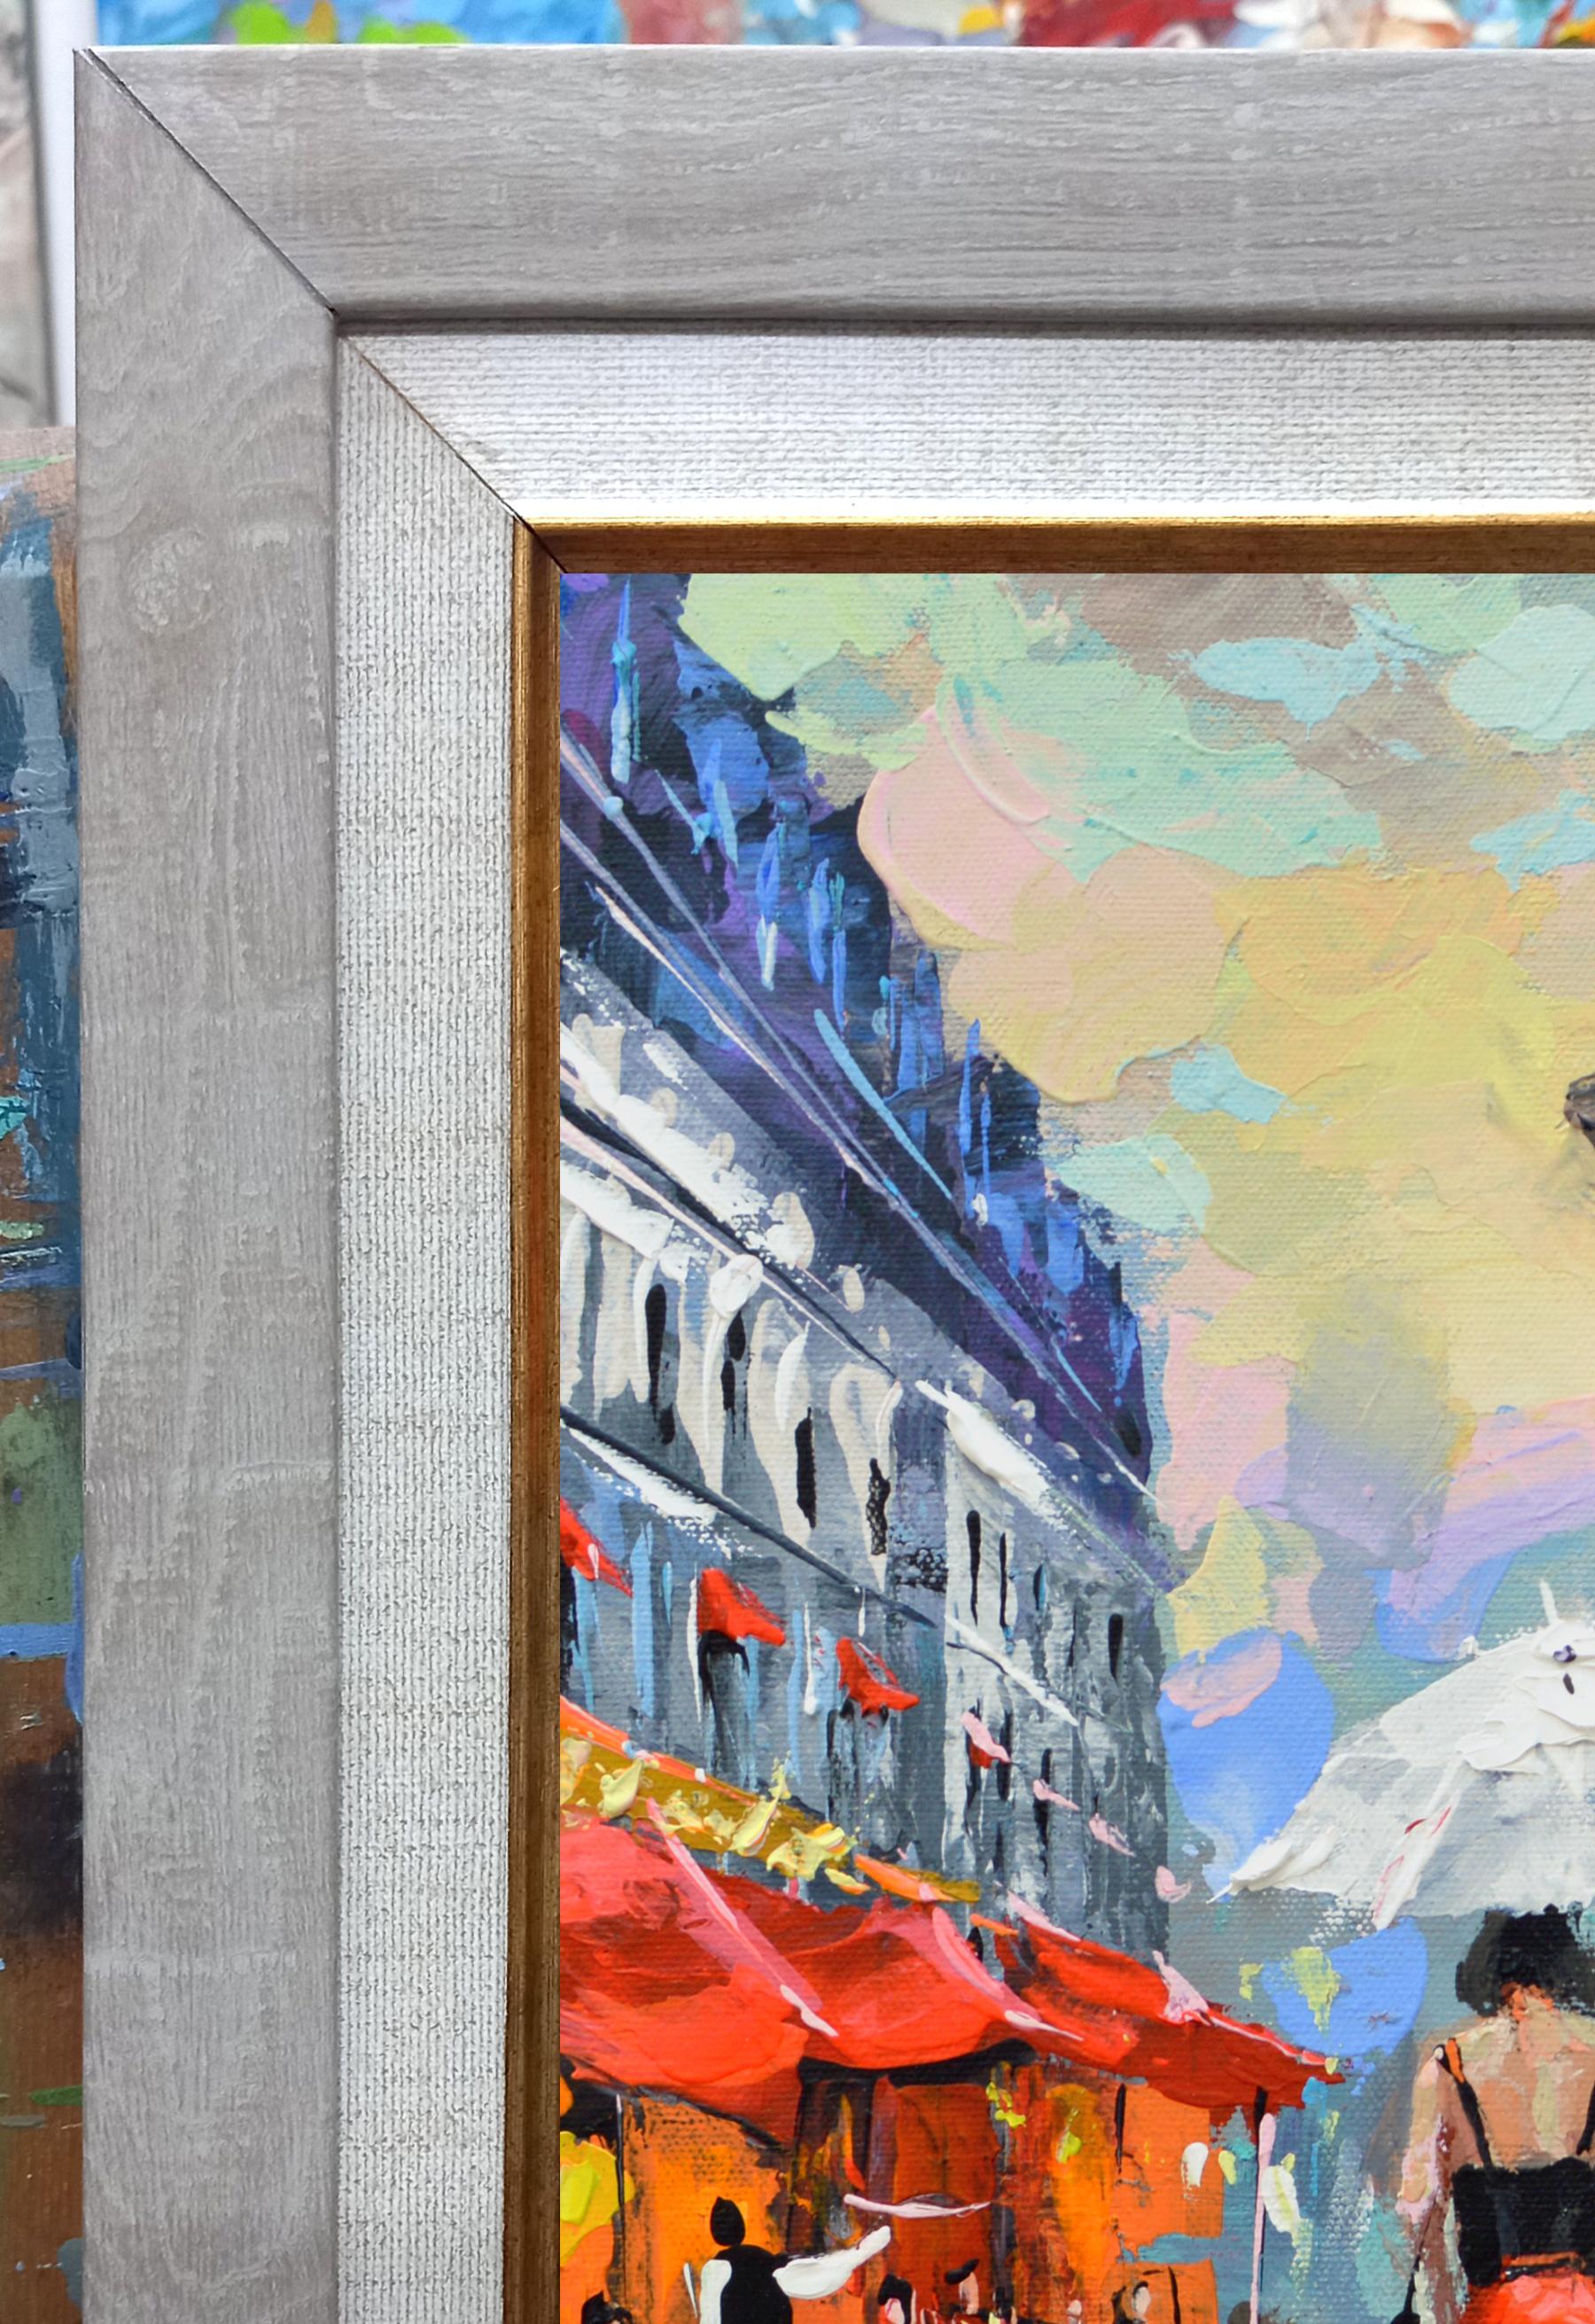 Acr. auf Leinwand Gemälde.
Abendlicher Spaziergang  - Acryl auf Leinwand, Impressionismus-Meereslandschaft-Malerei, 2019
Größe des Bildes - 36cm x 36cm, (14